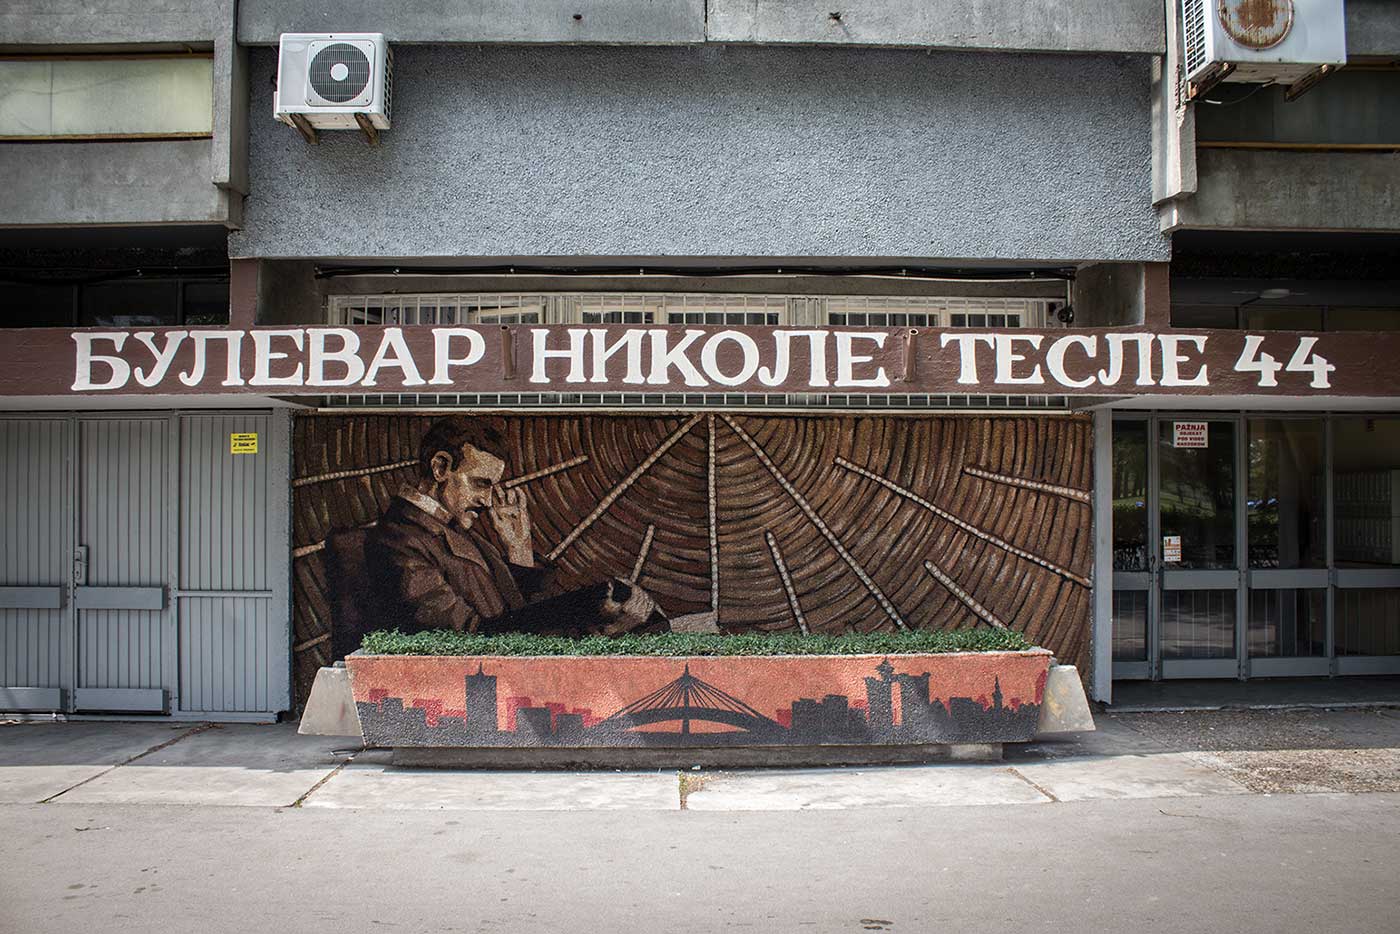 Tesla mural on the building at 44 Bulevar Nikole Tesle.